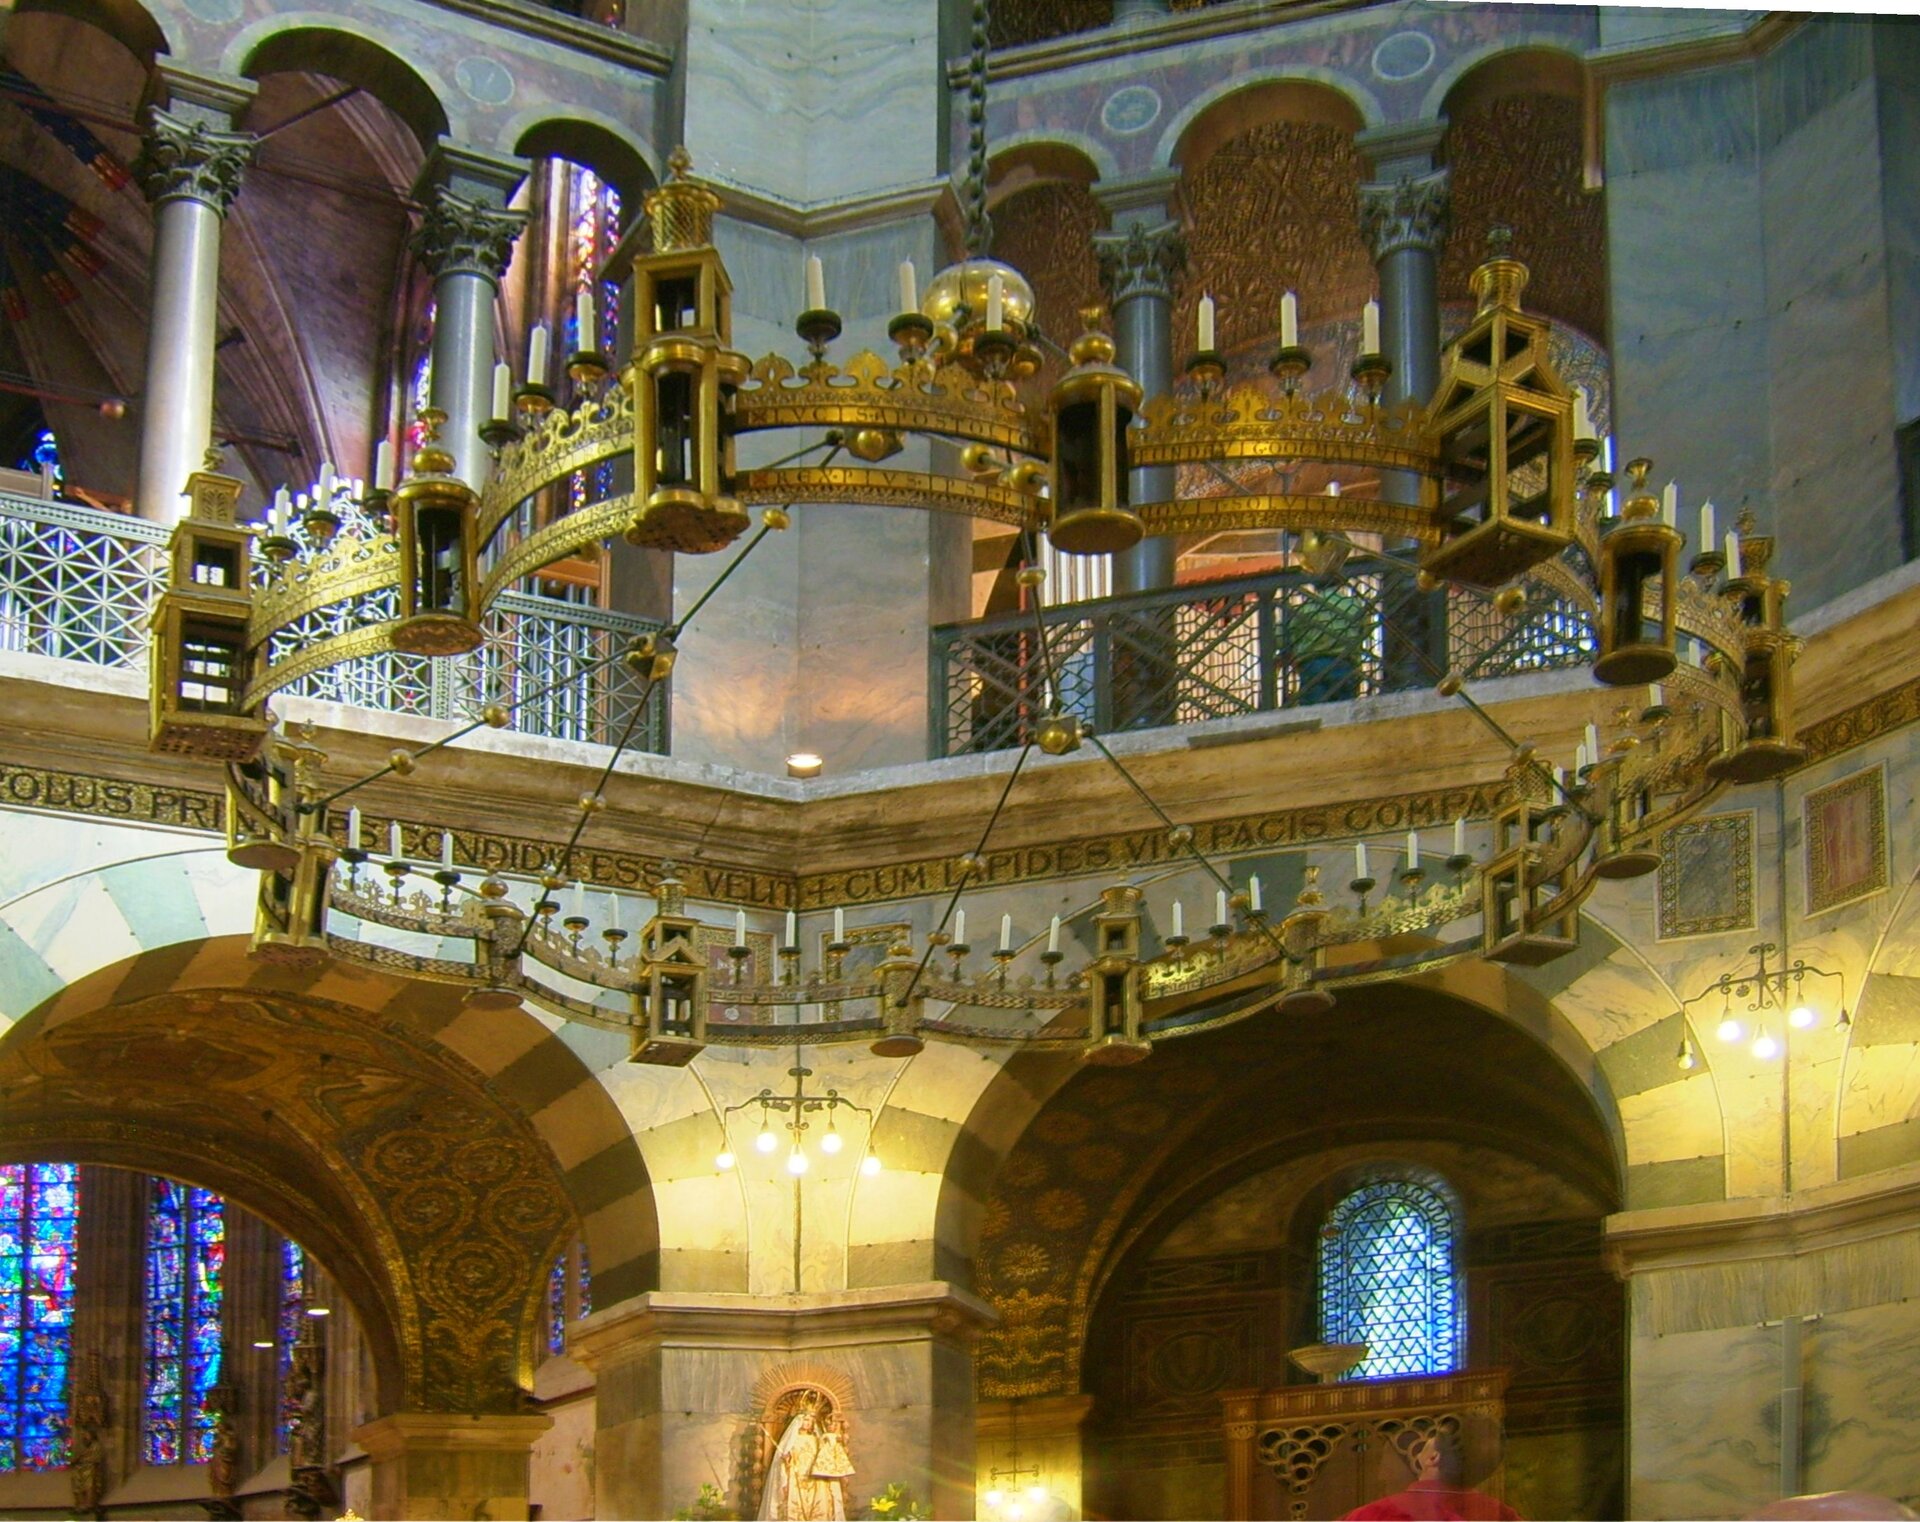 Zdjęcie przedstawia duży świecznik kolisty, który znajduje się pod kopułą dachu kaplicy, na którym umieszczonych jest 48 świec. Wykonany jest z pozłacanej miedzi. Przymocowany jest na łańcuchu na środku pod dachem. Świecznik składa się z 8 segmentów okręgu i jest tym samym dostosowany do ośmiokątnej formy kaplicy pałacu. Obręcz świecznika wygląda jak mur miejski, który zawiera 8 dużych i 8 małych latarni. 